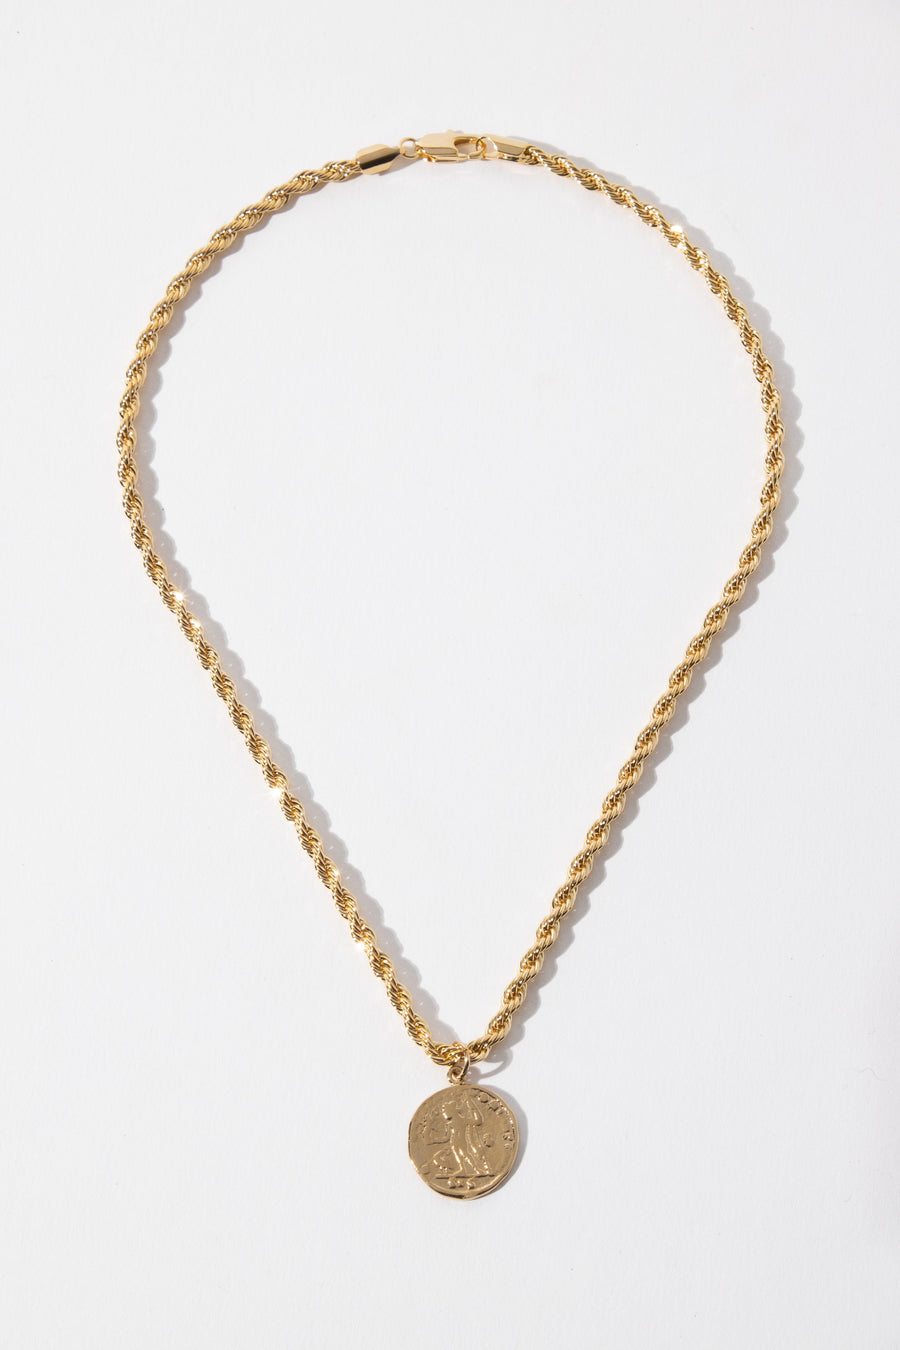 Dona Italia Jewelry Gold / 18 Inches The Corda Necklace